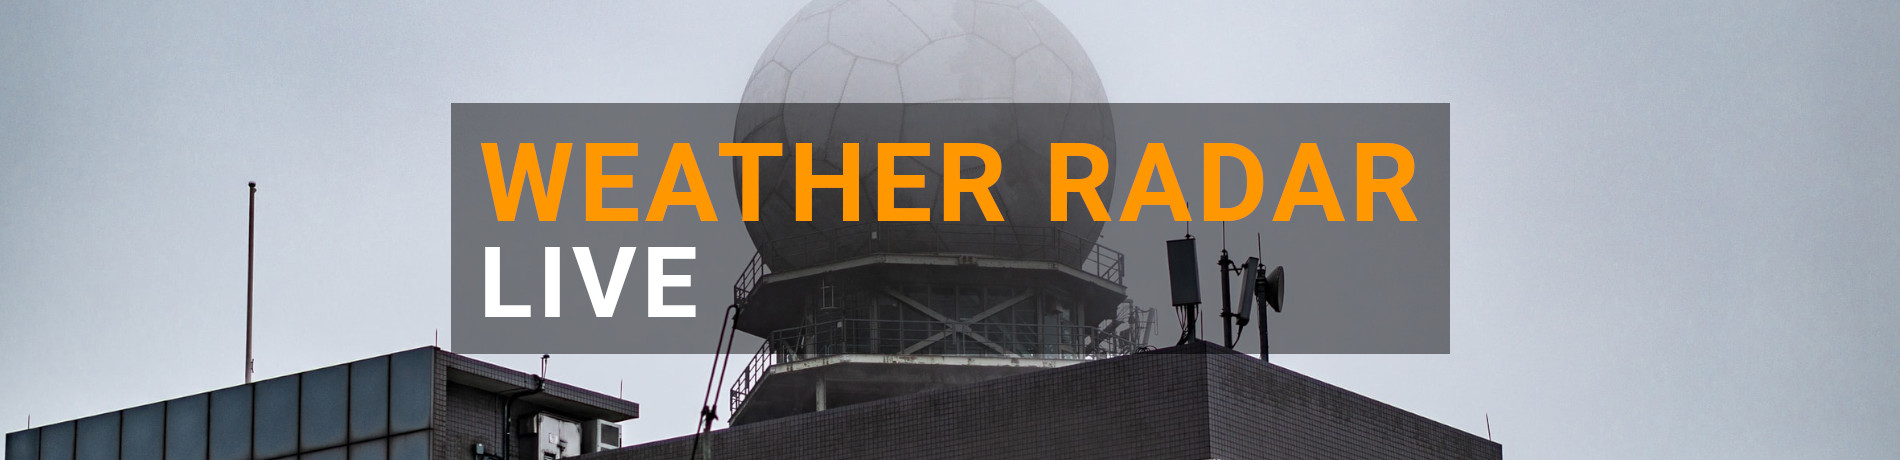 Weather radar live